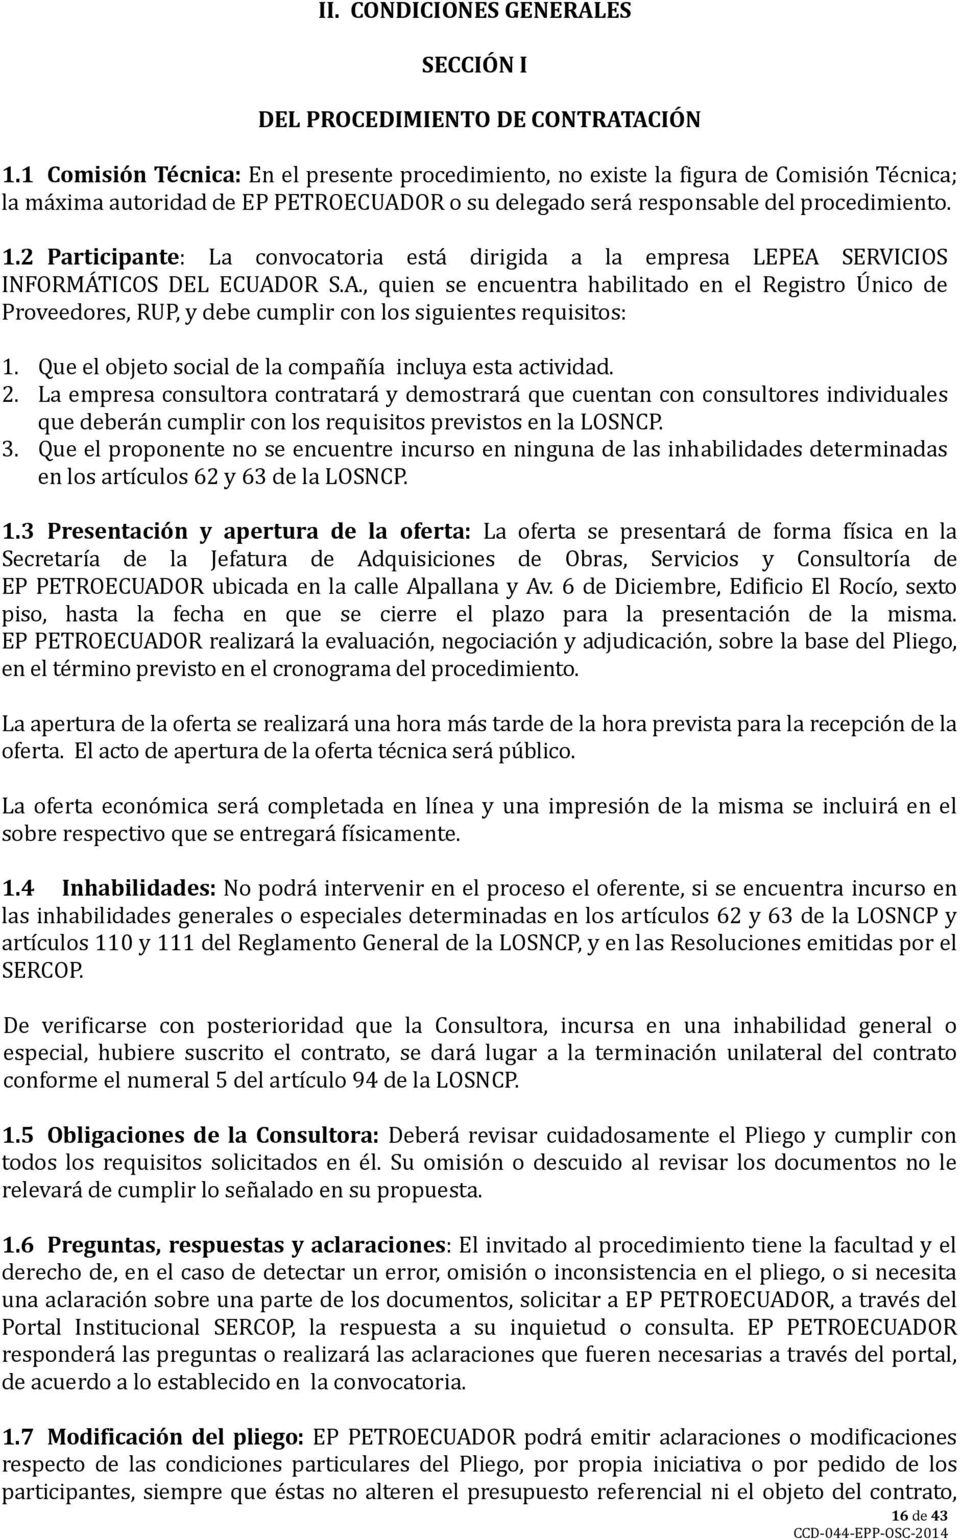 2 Participante: La convocatoria está dirigida a la empresa LEPEA SERVICIOS INFORMÁTICOS DEL ECUADOR S.A., quien se encuentra habilitado en el Registro Único de Proveedores, RUP, y debe cumplir con los siguientes requisitos: 1.